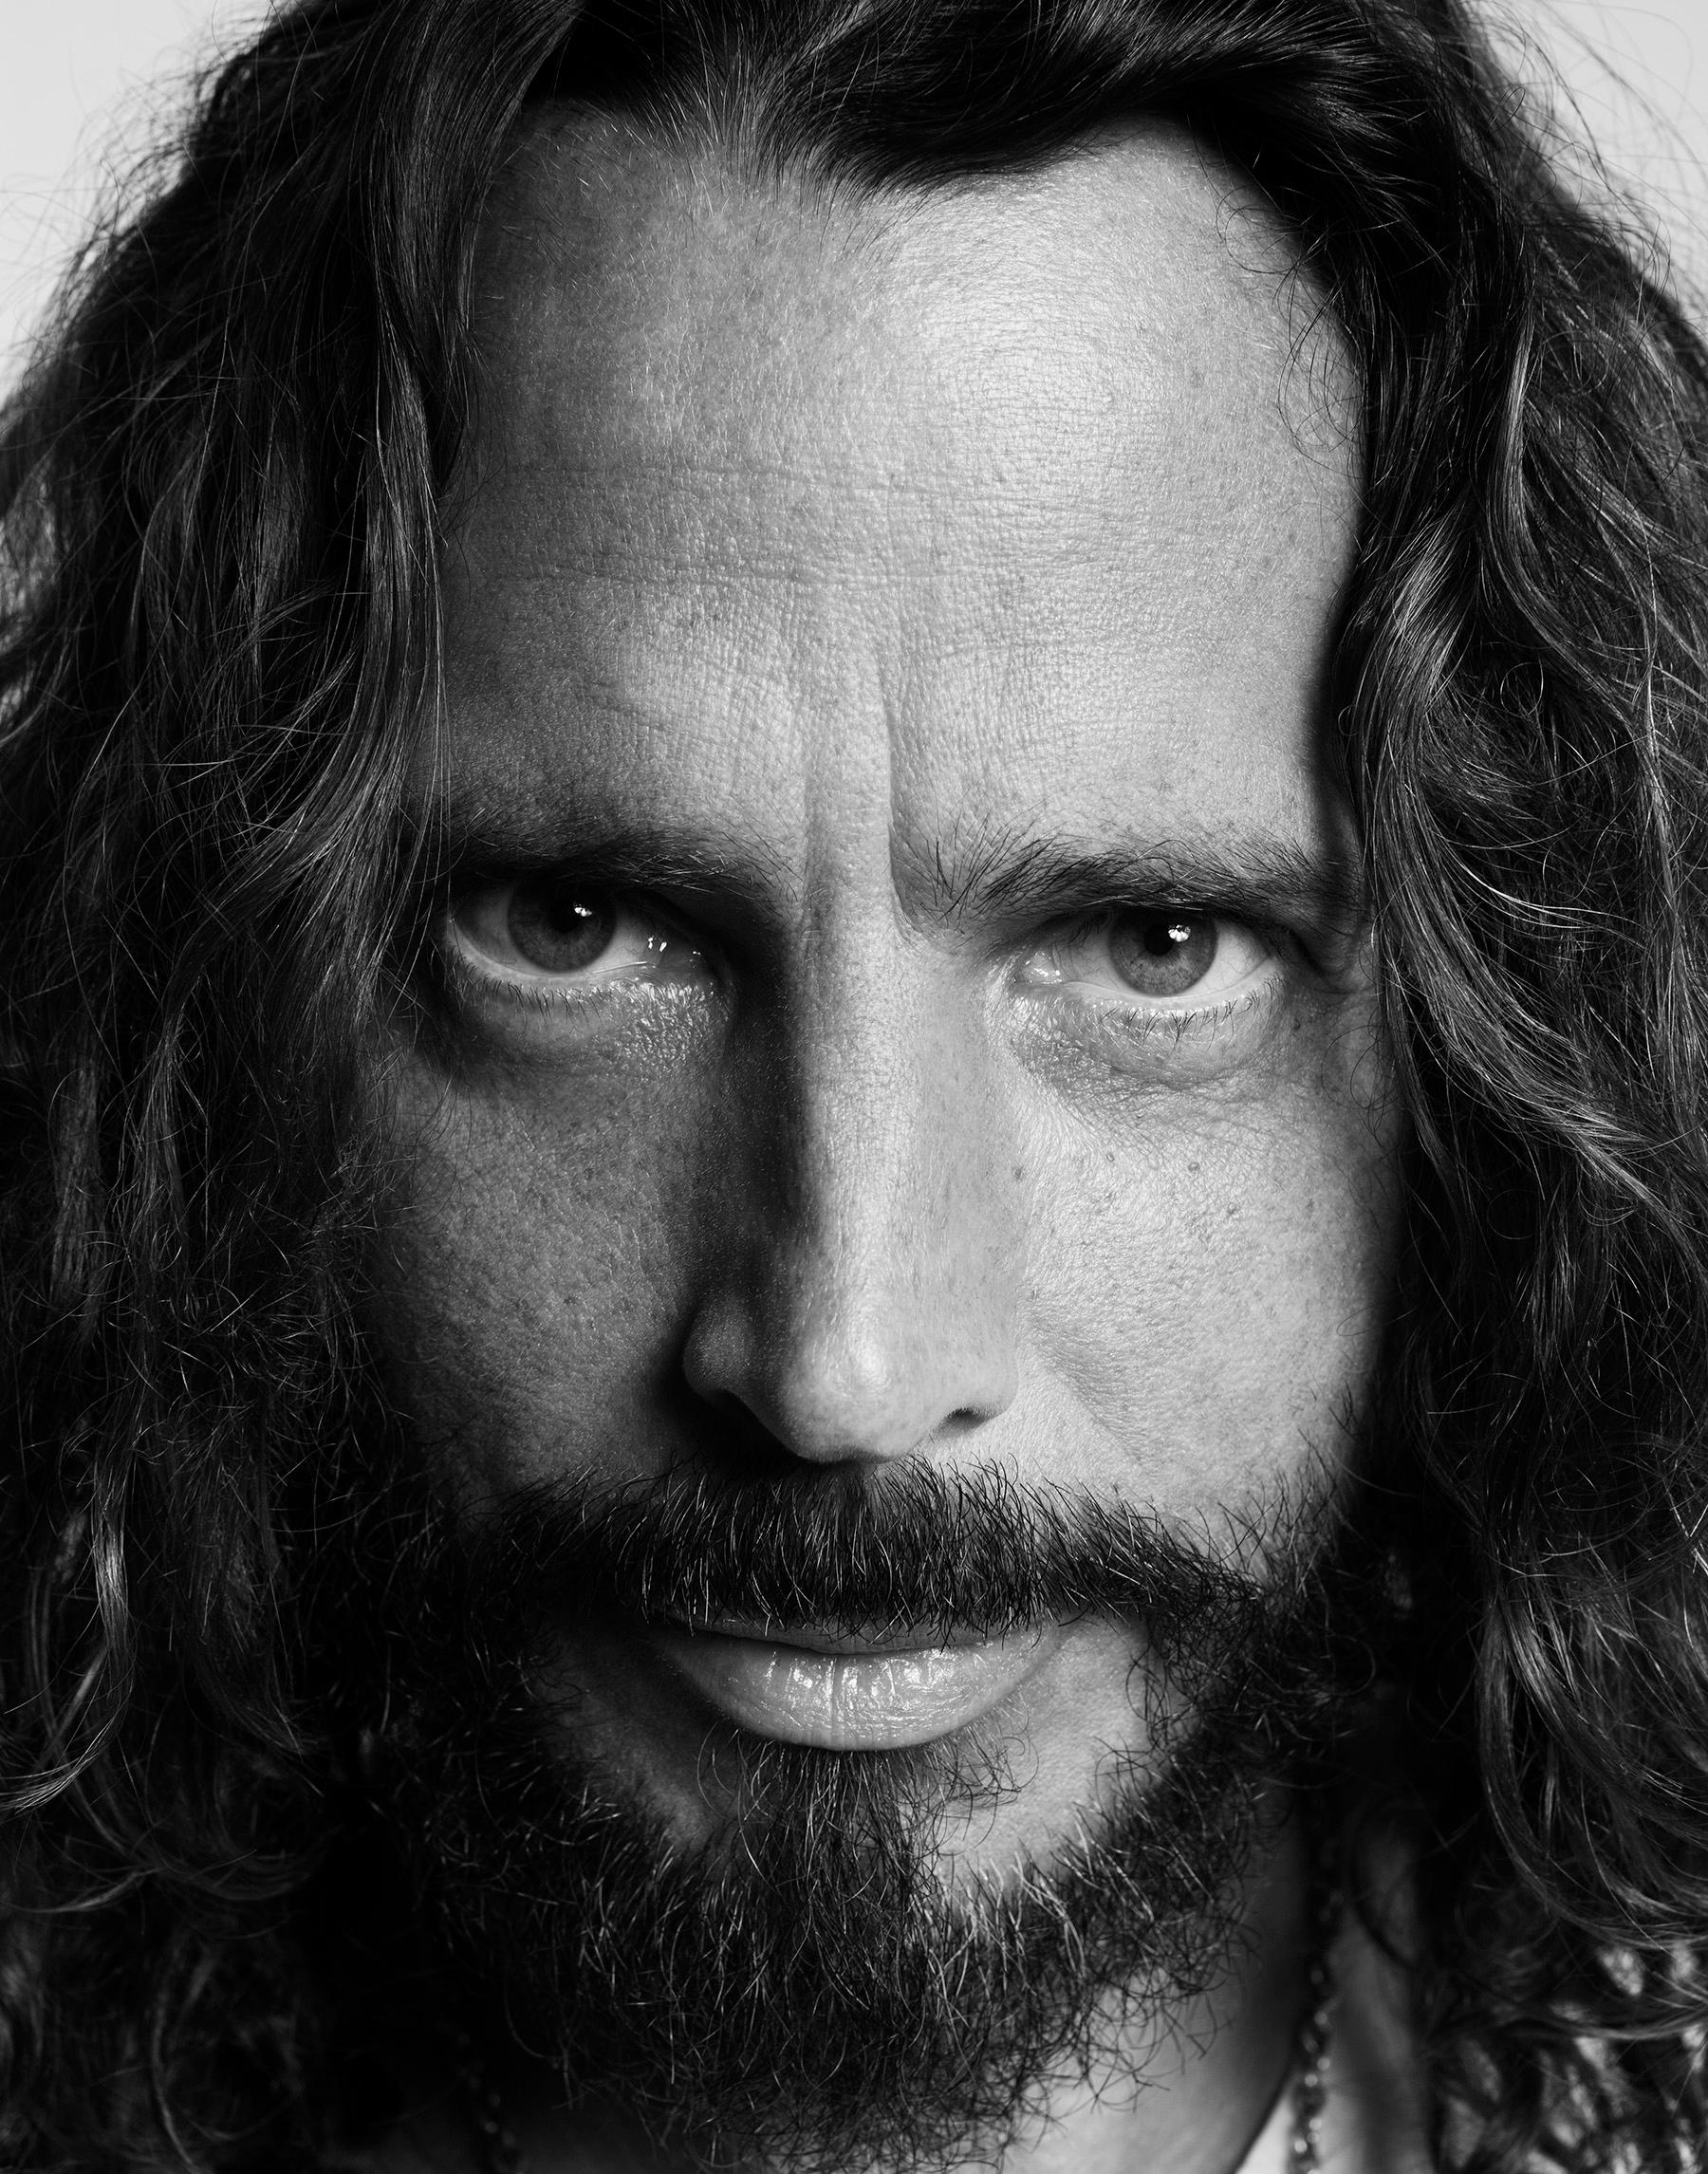 Gerahmter, signierter 9x12" Open-Edition-Druck von Chris Cornell von Soundgarden und Audioslave von Jake Chessum

Jake erinnert sich an die Session: "Das war ein kurzer und freundschaftlicher Dreh auf dem Toronto International Film Festival im